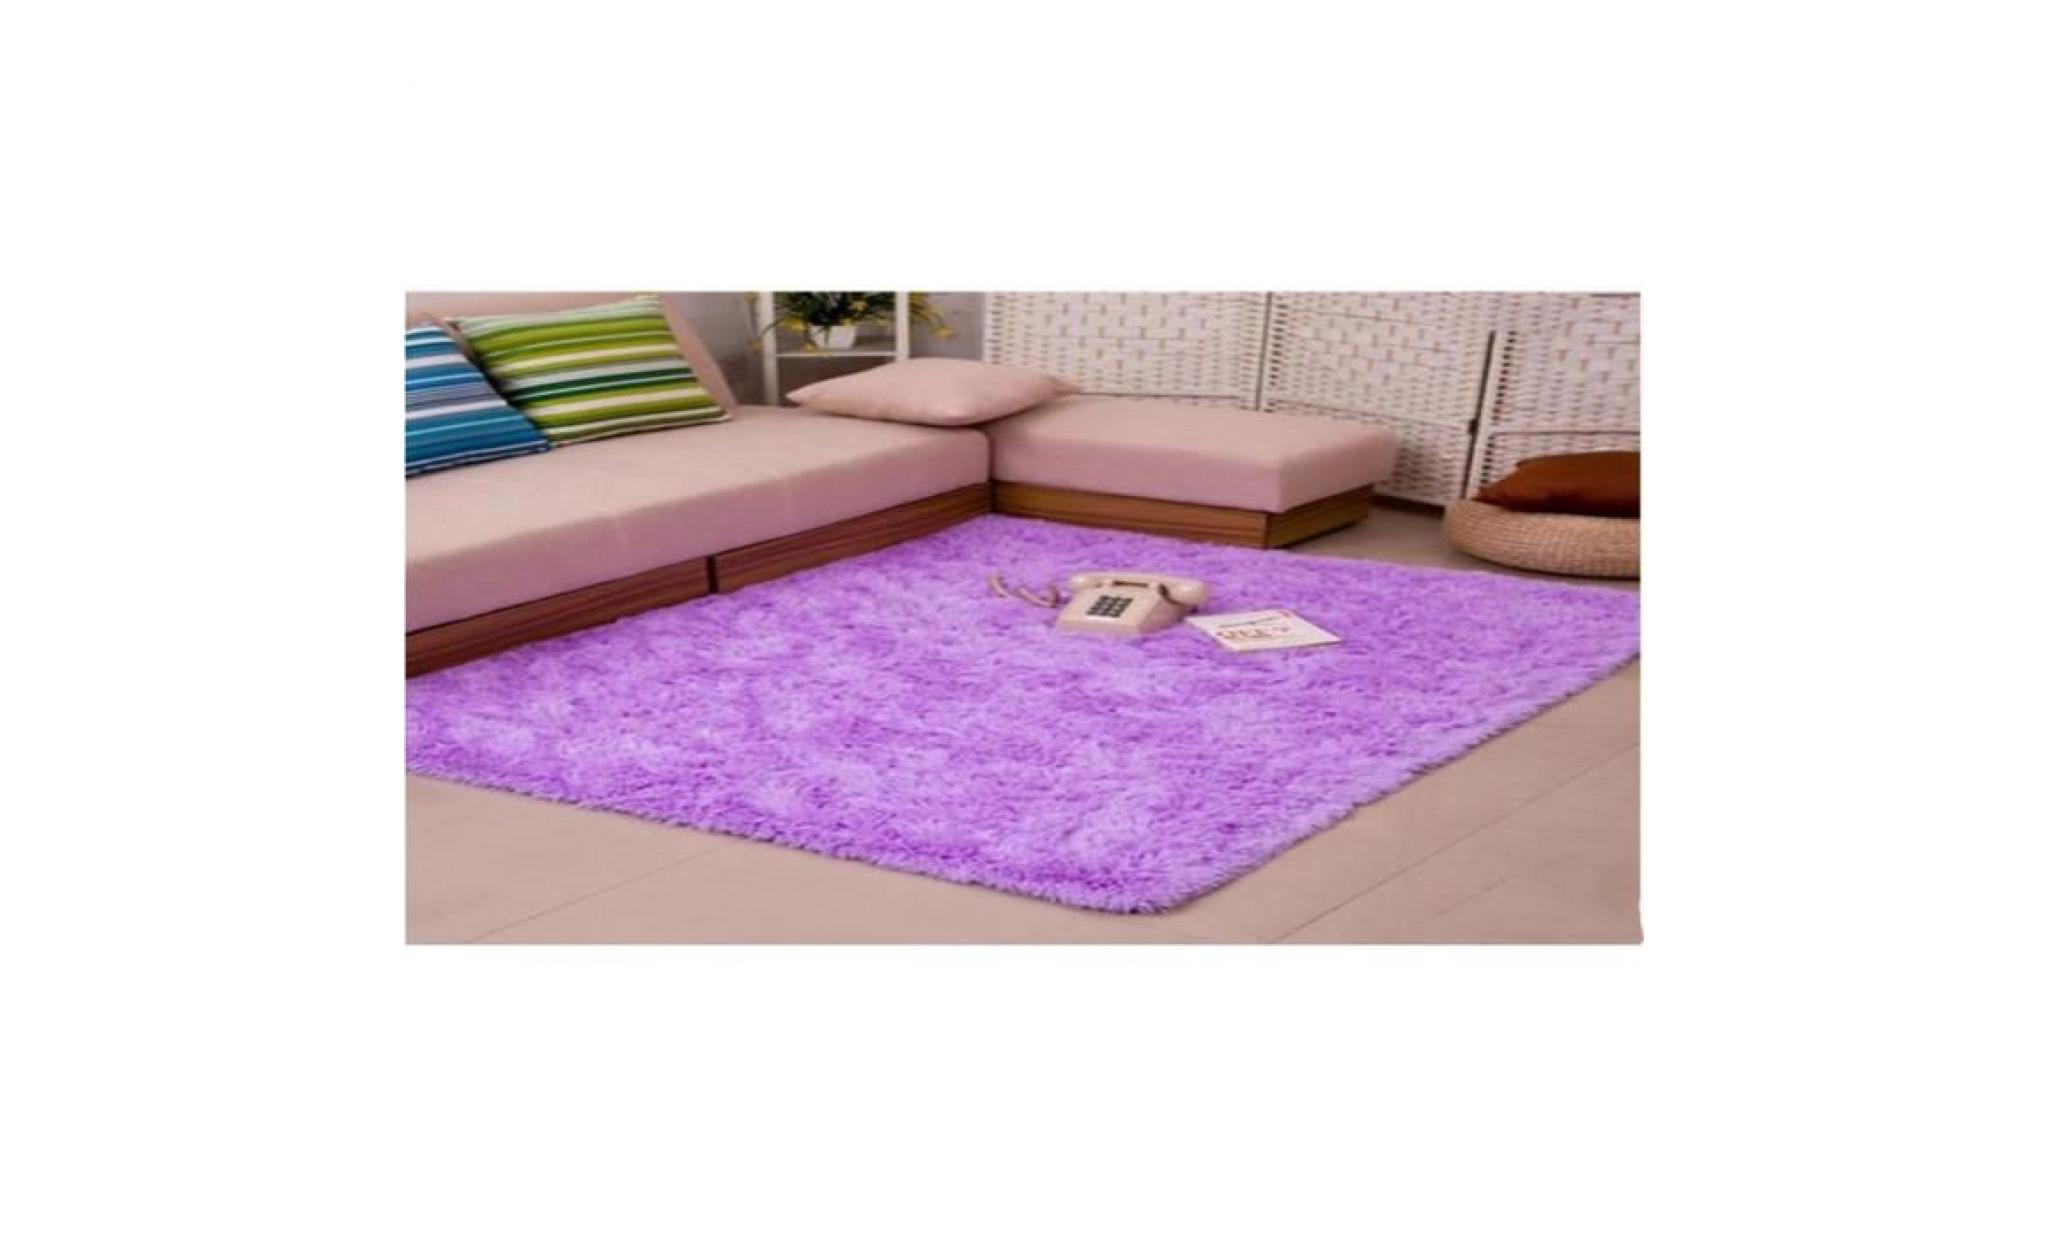 ffjts brand new fashion carpet salon intérieur chambre à coucher cosmétique anti bactérienne anti skid style simple , pink ,